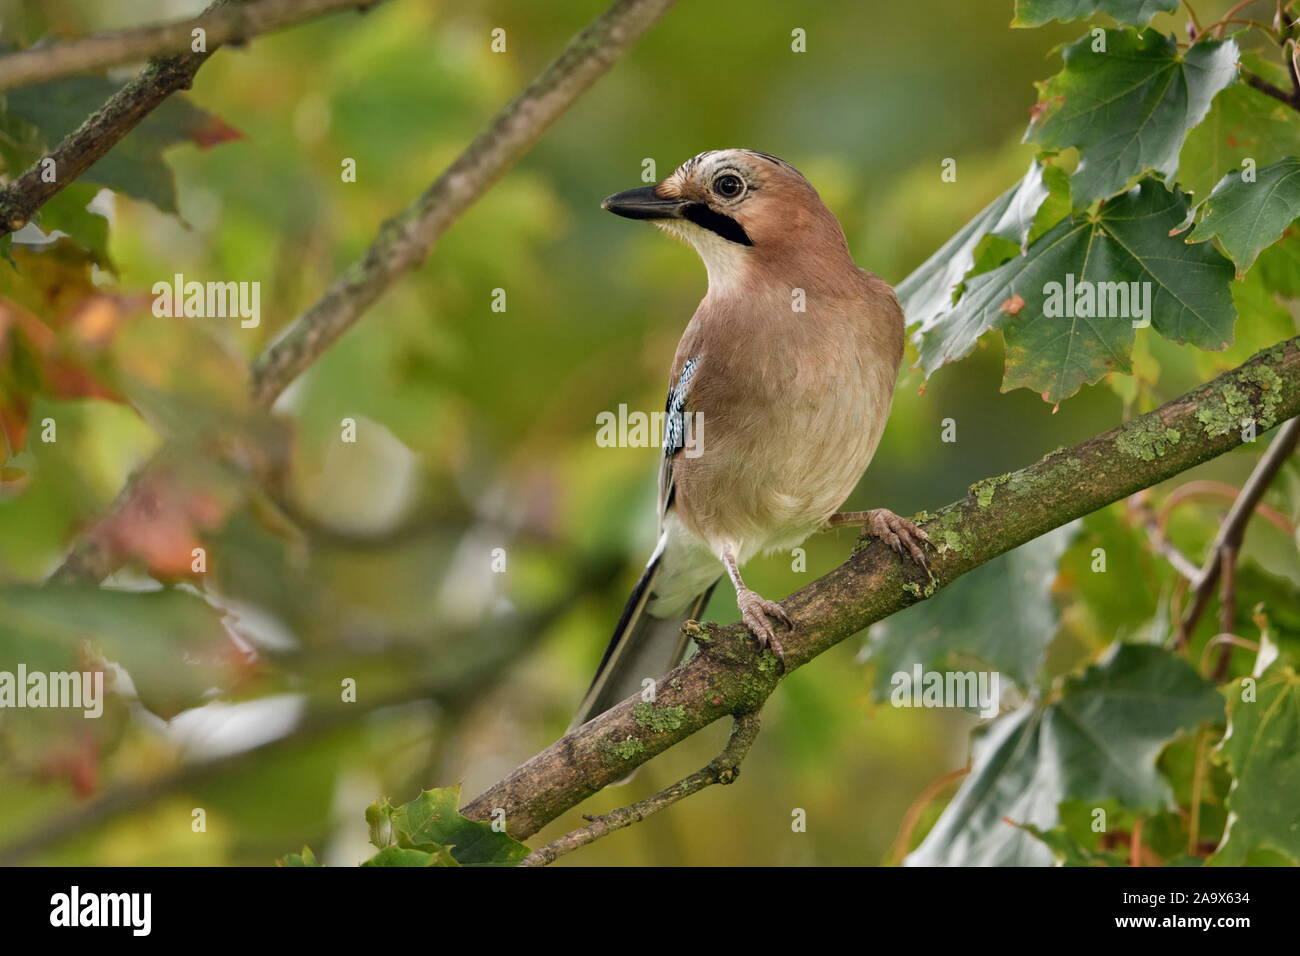 Jay euroasiático ( Garrulus glandarius ), encaramado en un árbol, mirando alrededor, muy atento, la fauna, las aves de Europa. Foto de stock